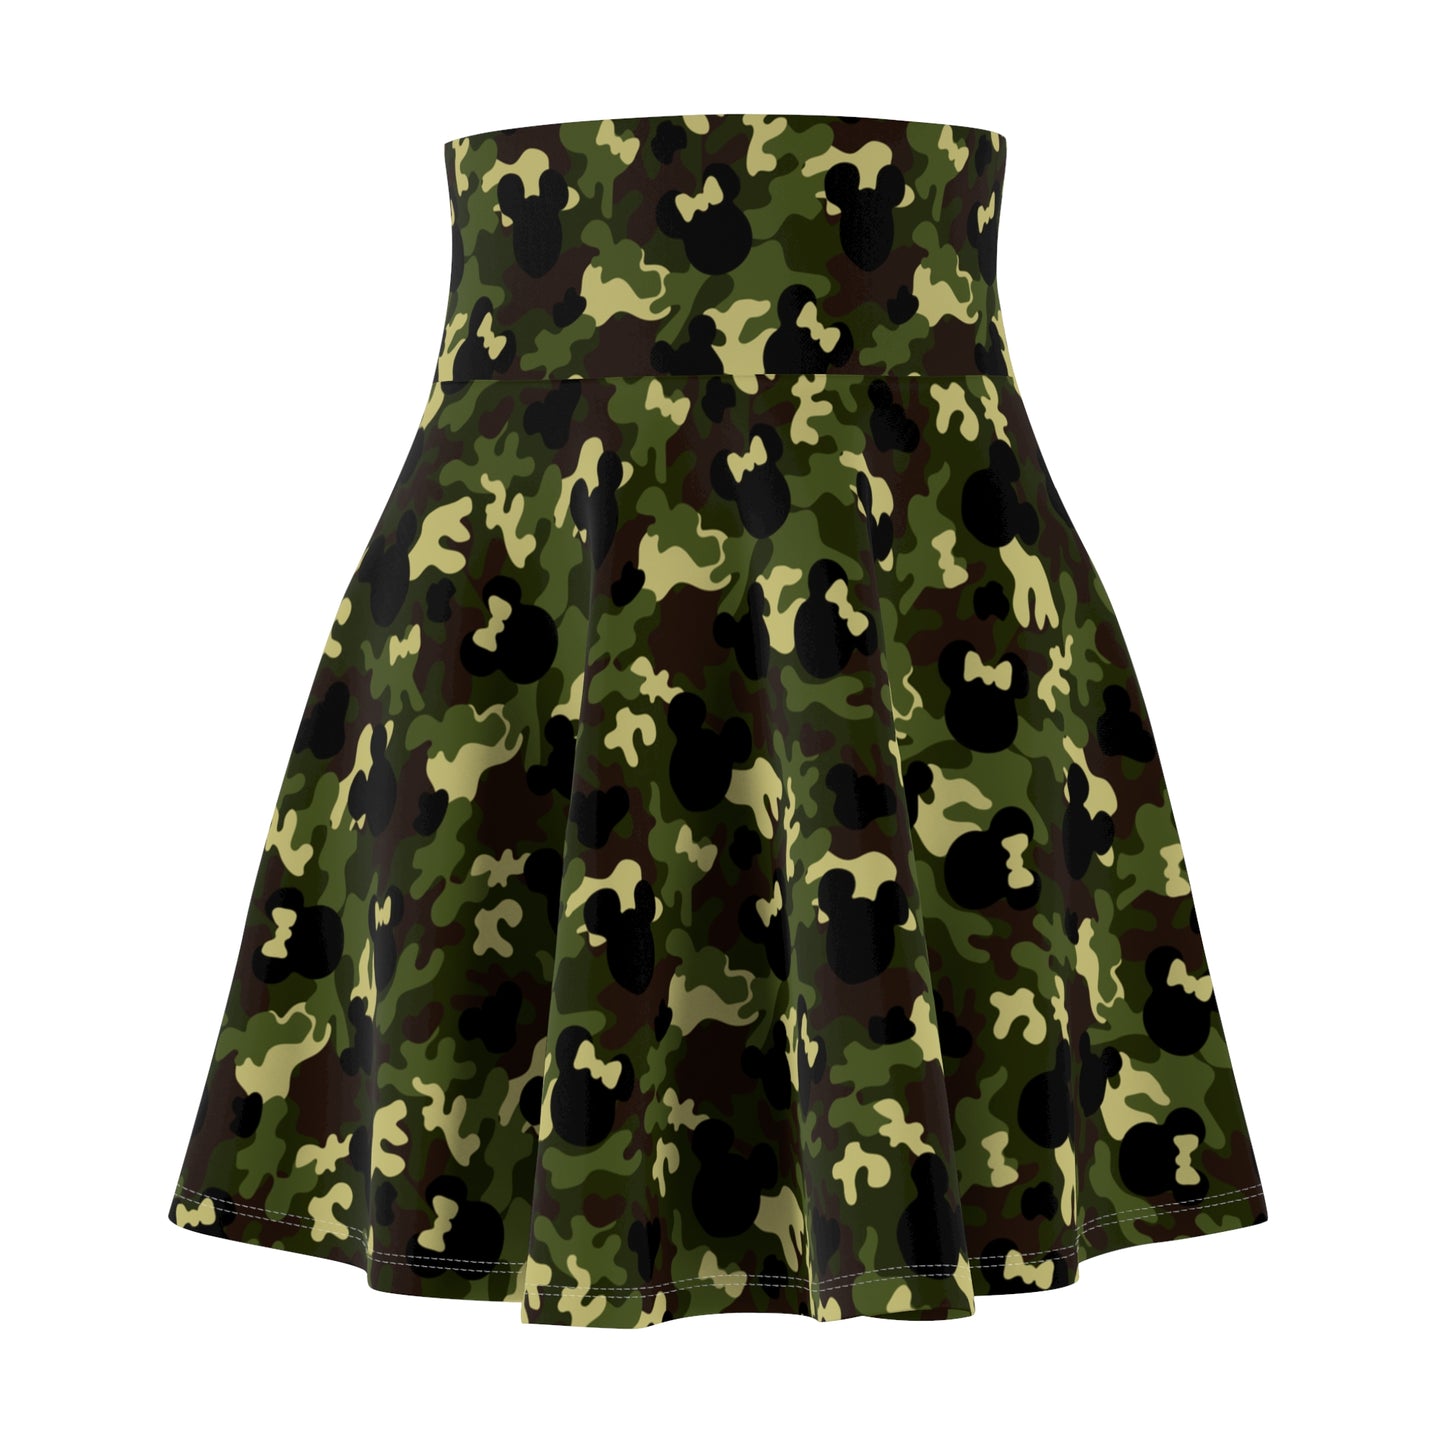 Camouflage Women's Skater Skirt